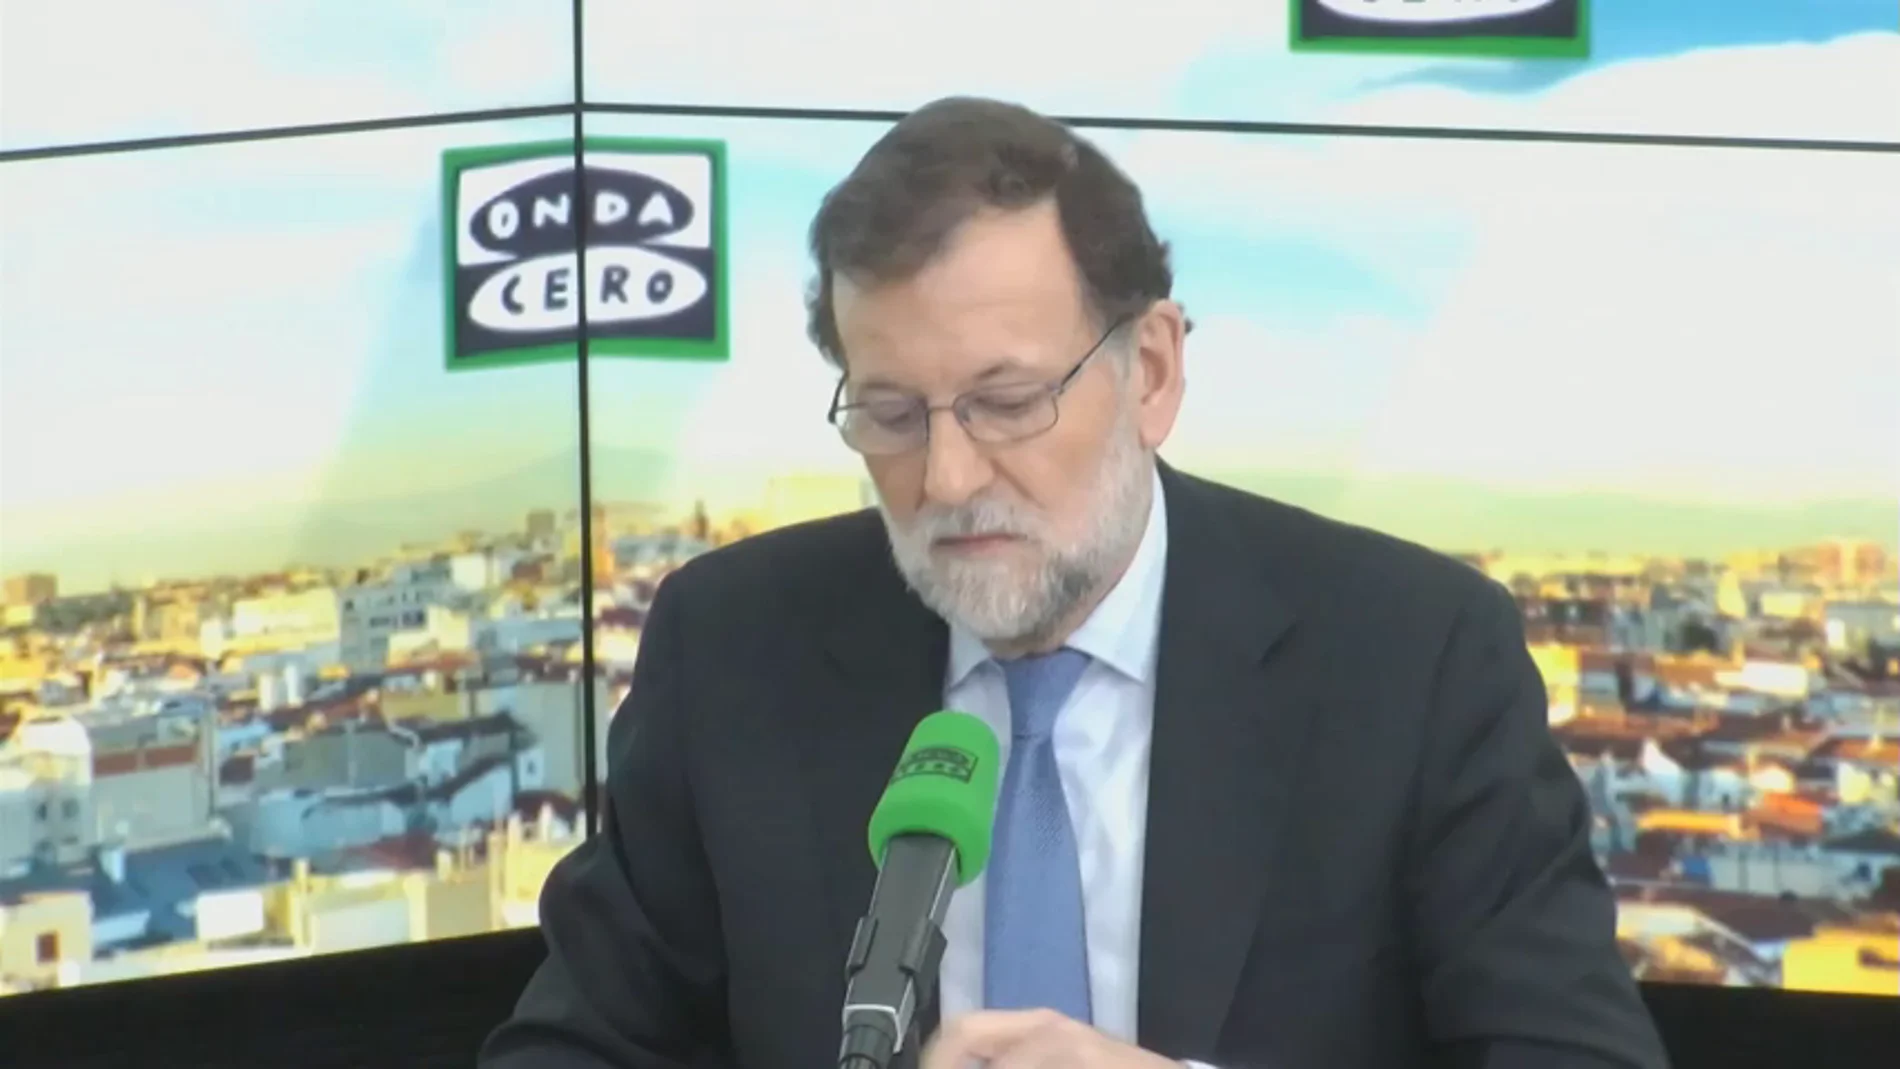 Frame 0.0 de: Rajoy: “La mayor parte del empleo creado en estos 3 años ha sido para jóvenes”